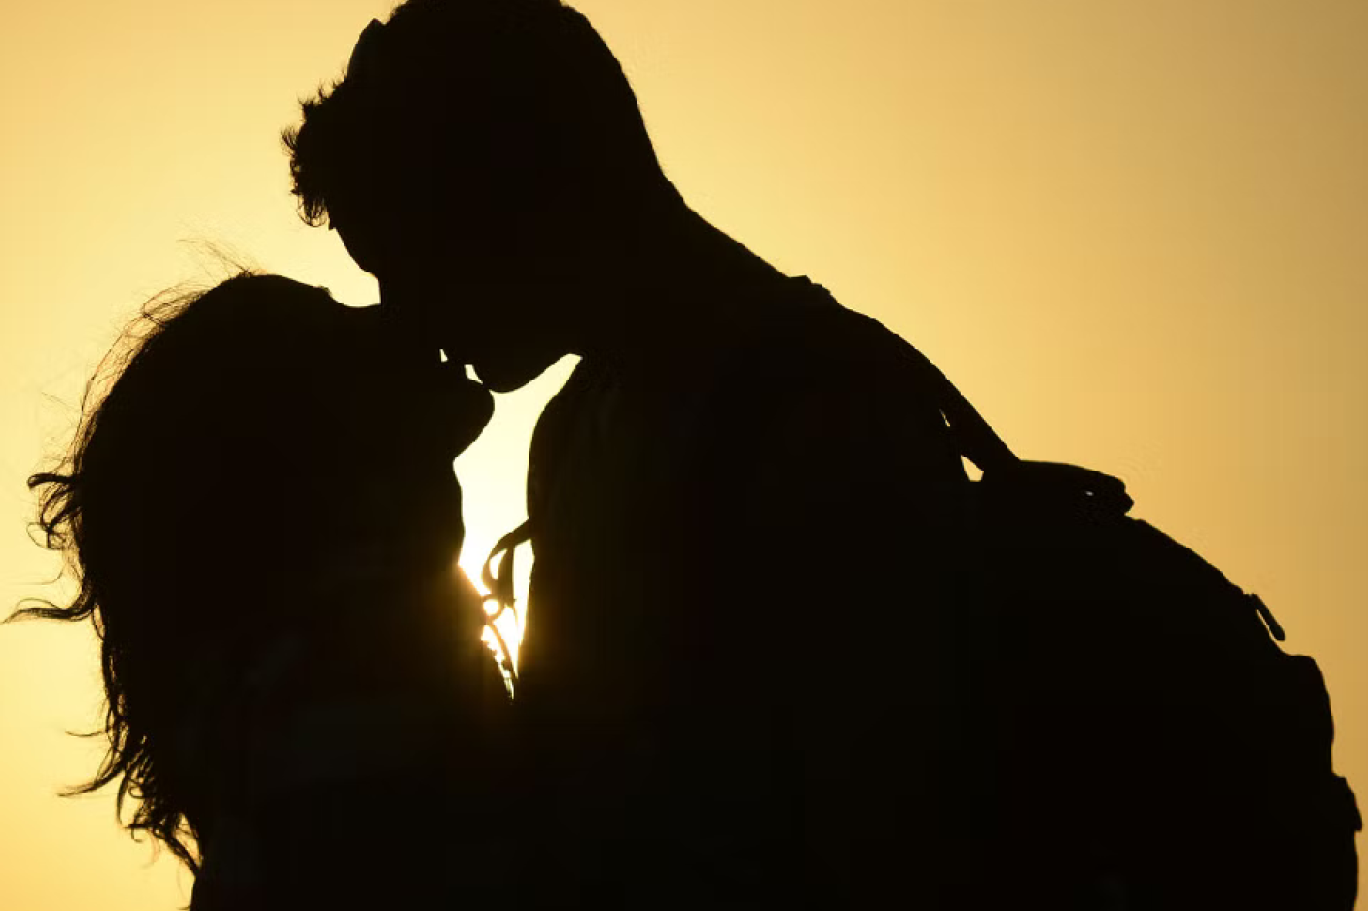 البشر بدأوا التقبيل الرومانسي قبل 4500 سنة في الأقل | اندبندنت عربية